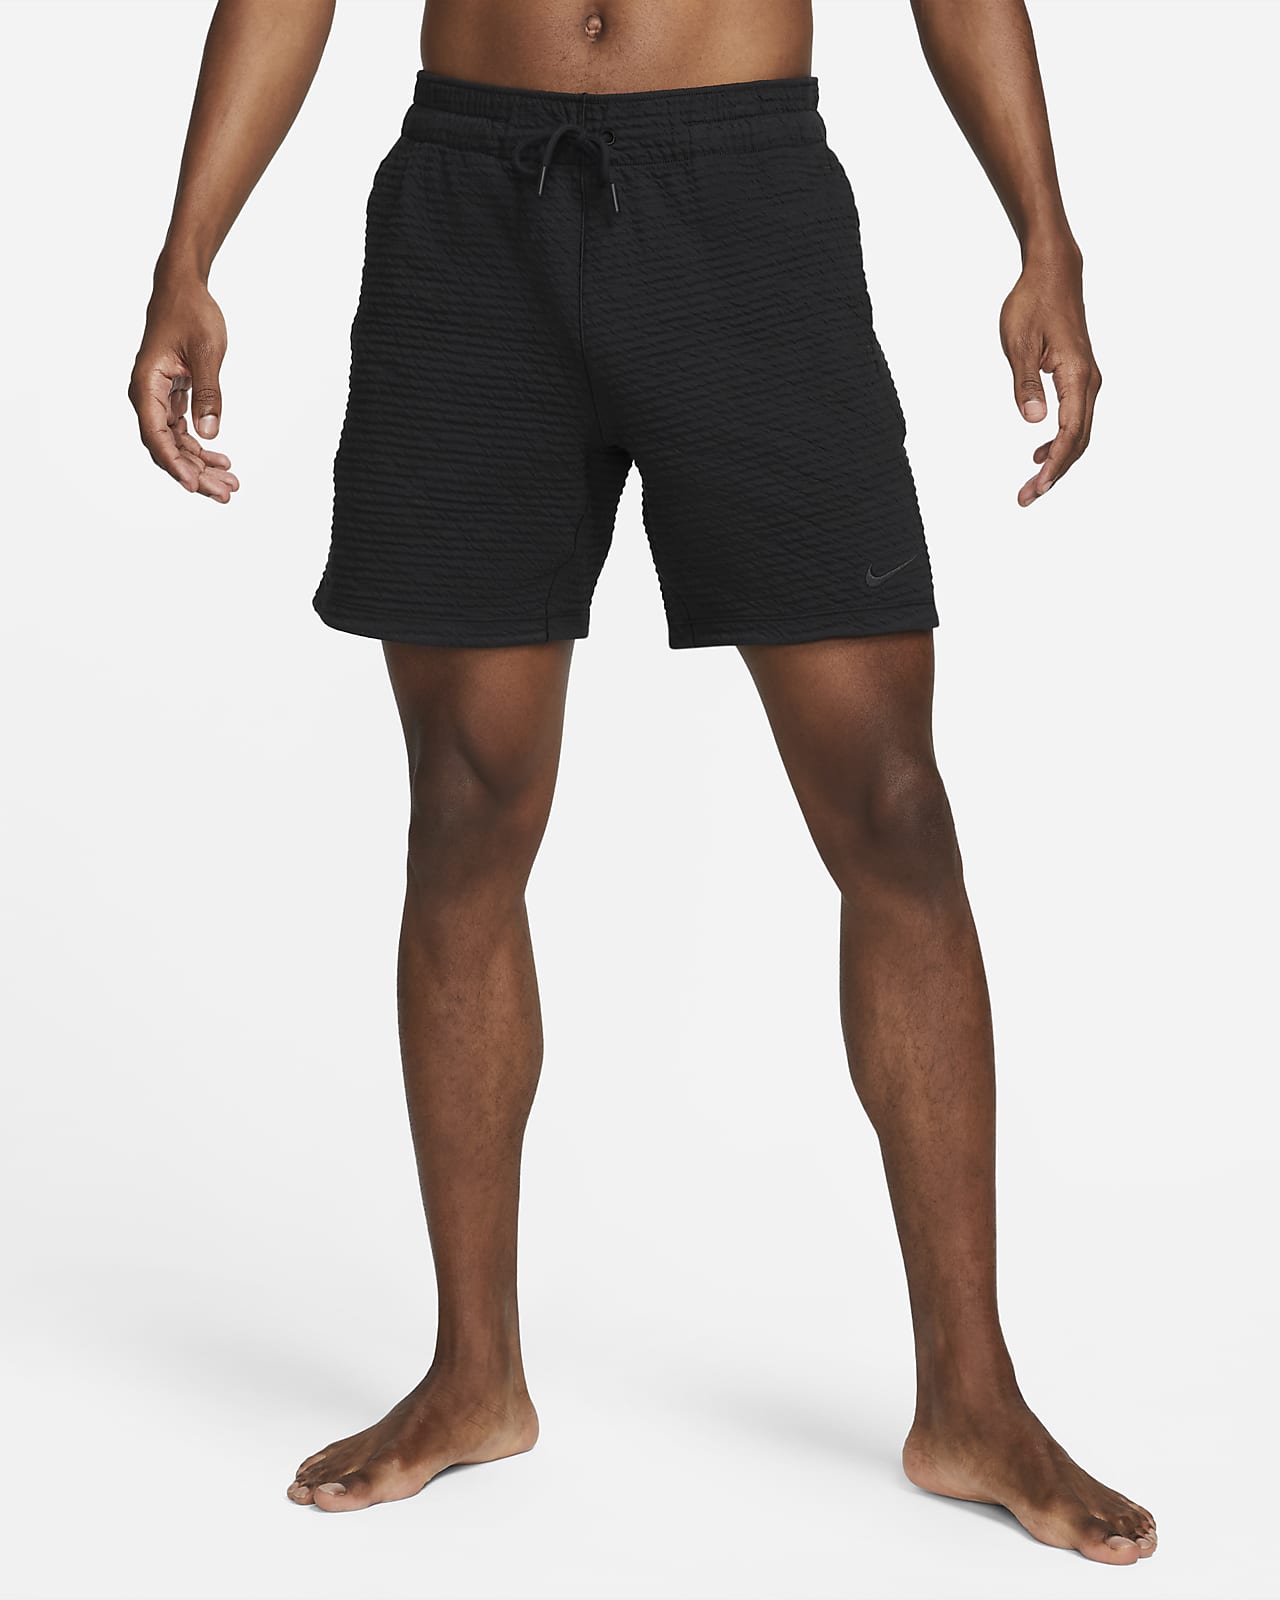 Nike Yoga Men's Dri-FIT 7" Unlined Shorts